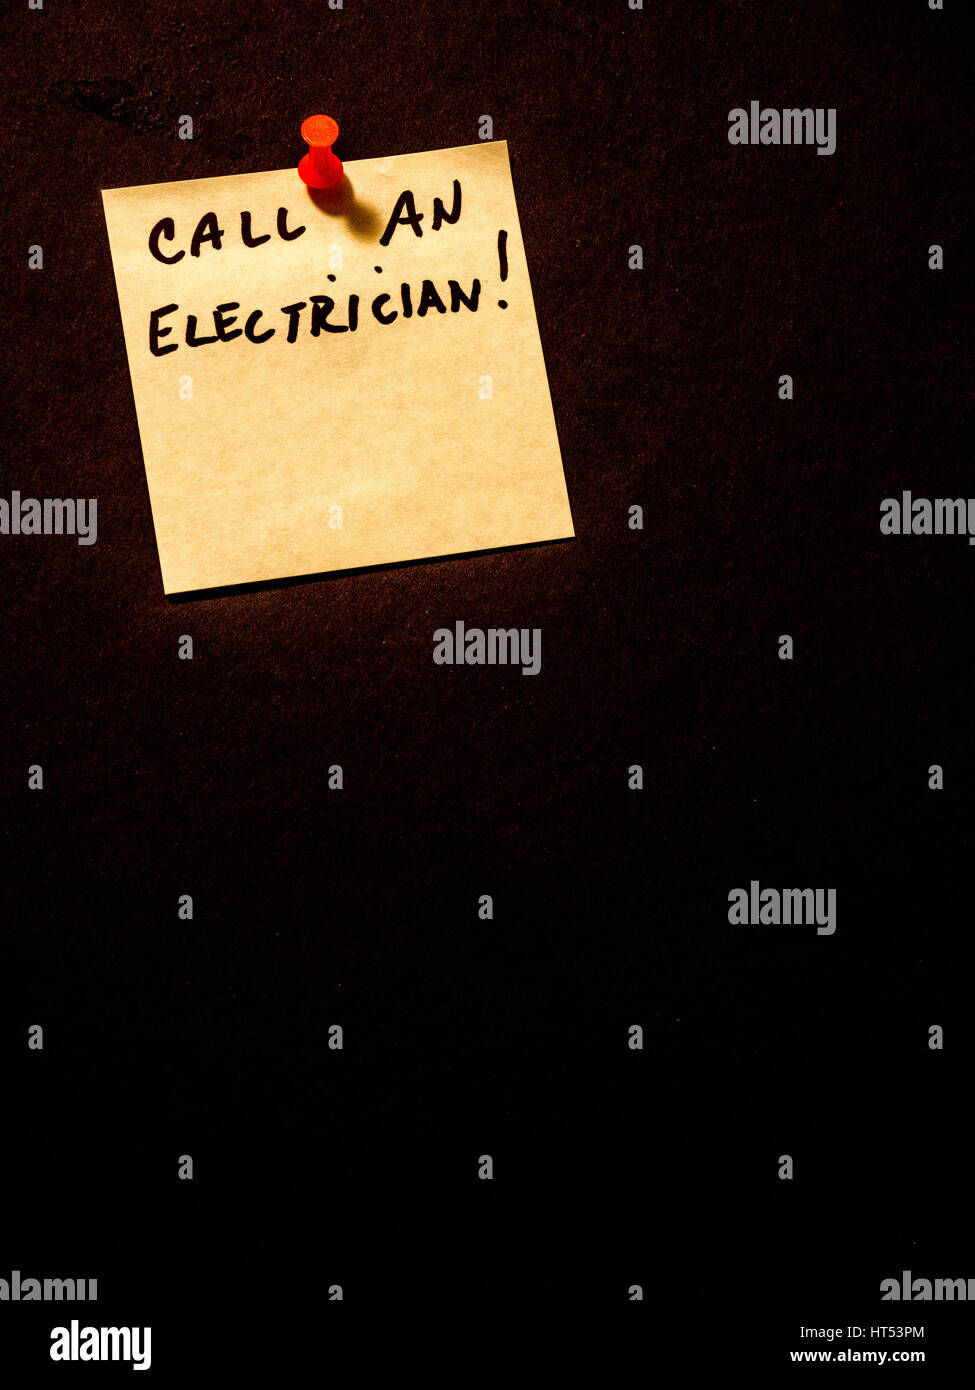 Chiamare un elettricista, post-it sul nero, orientamento orizzontale Foto Stock